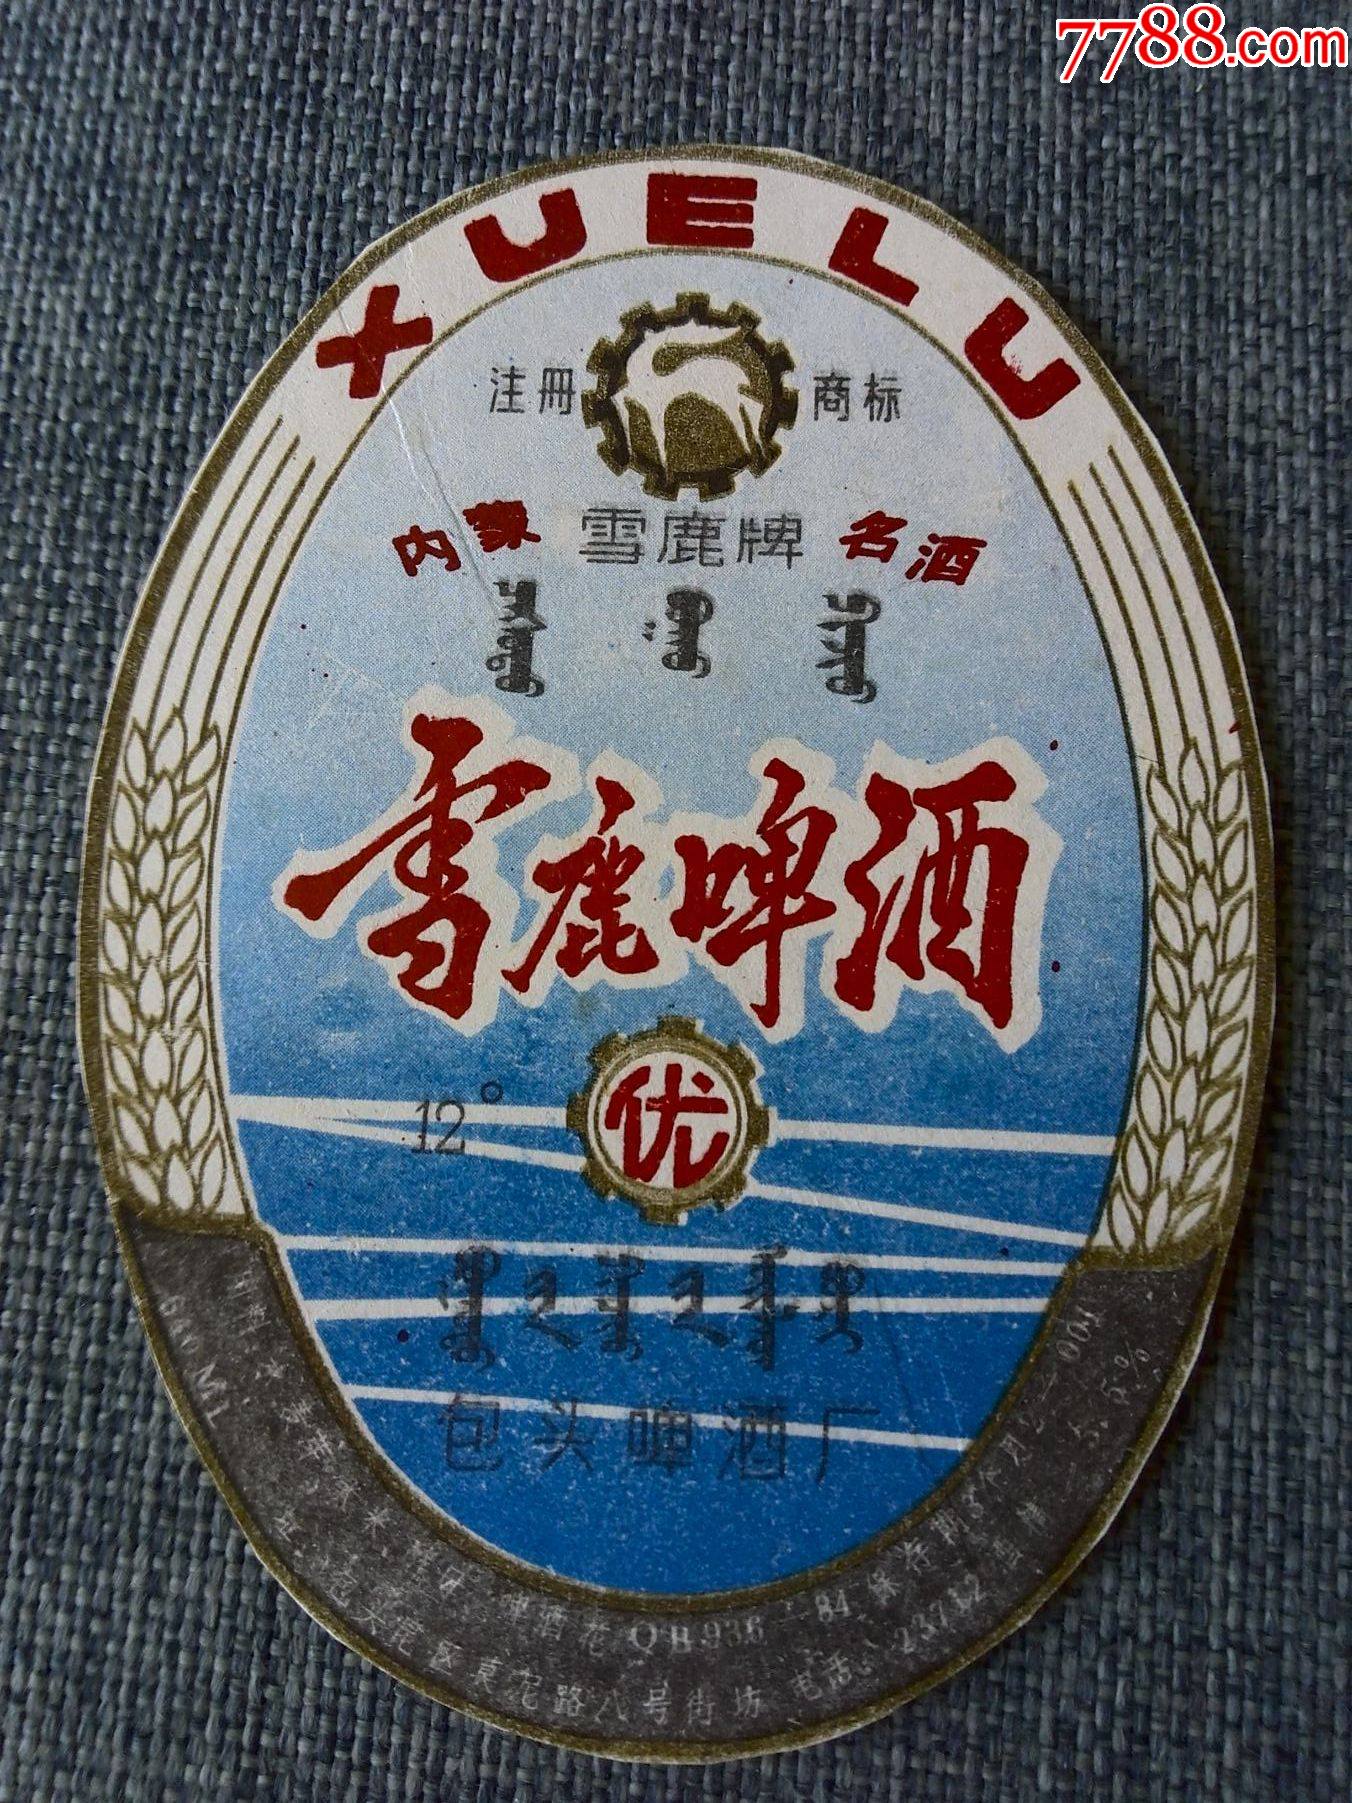 内蒙古包头啤酒厂雪鹿啤酒12度商标